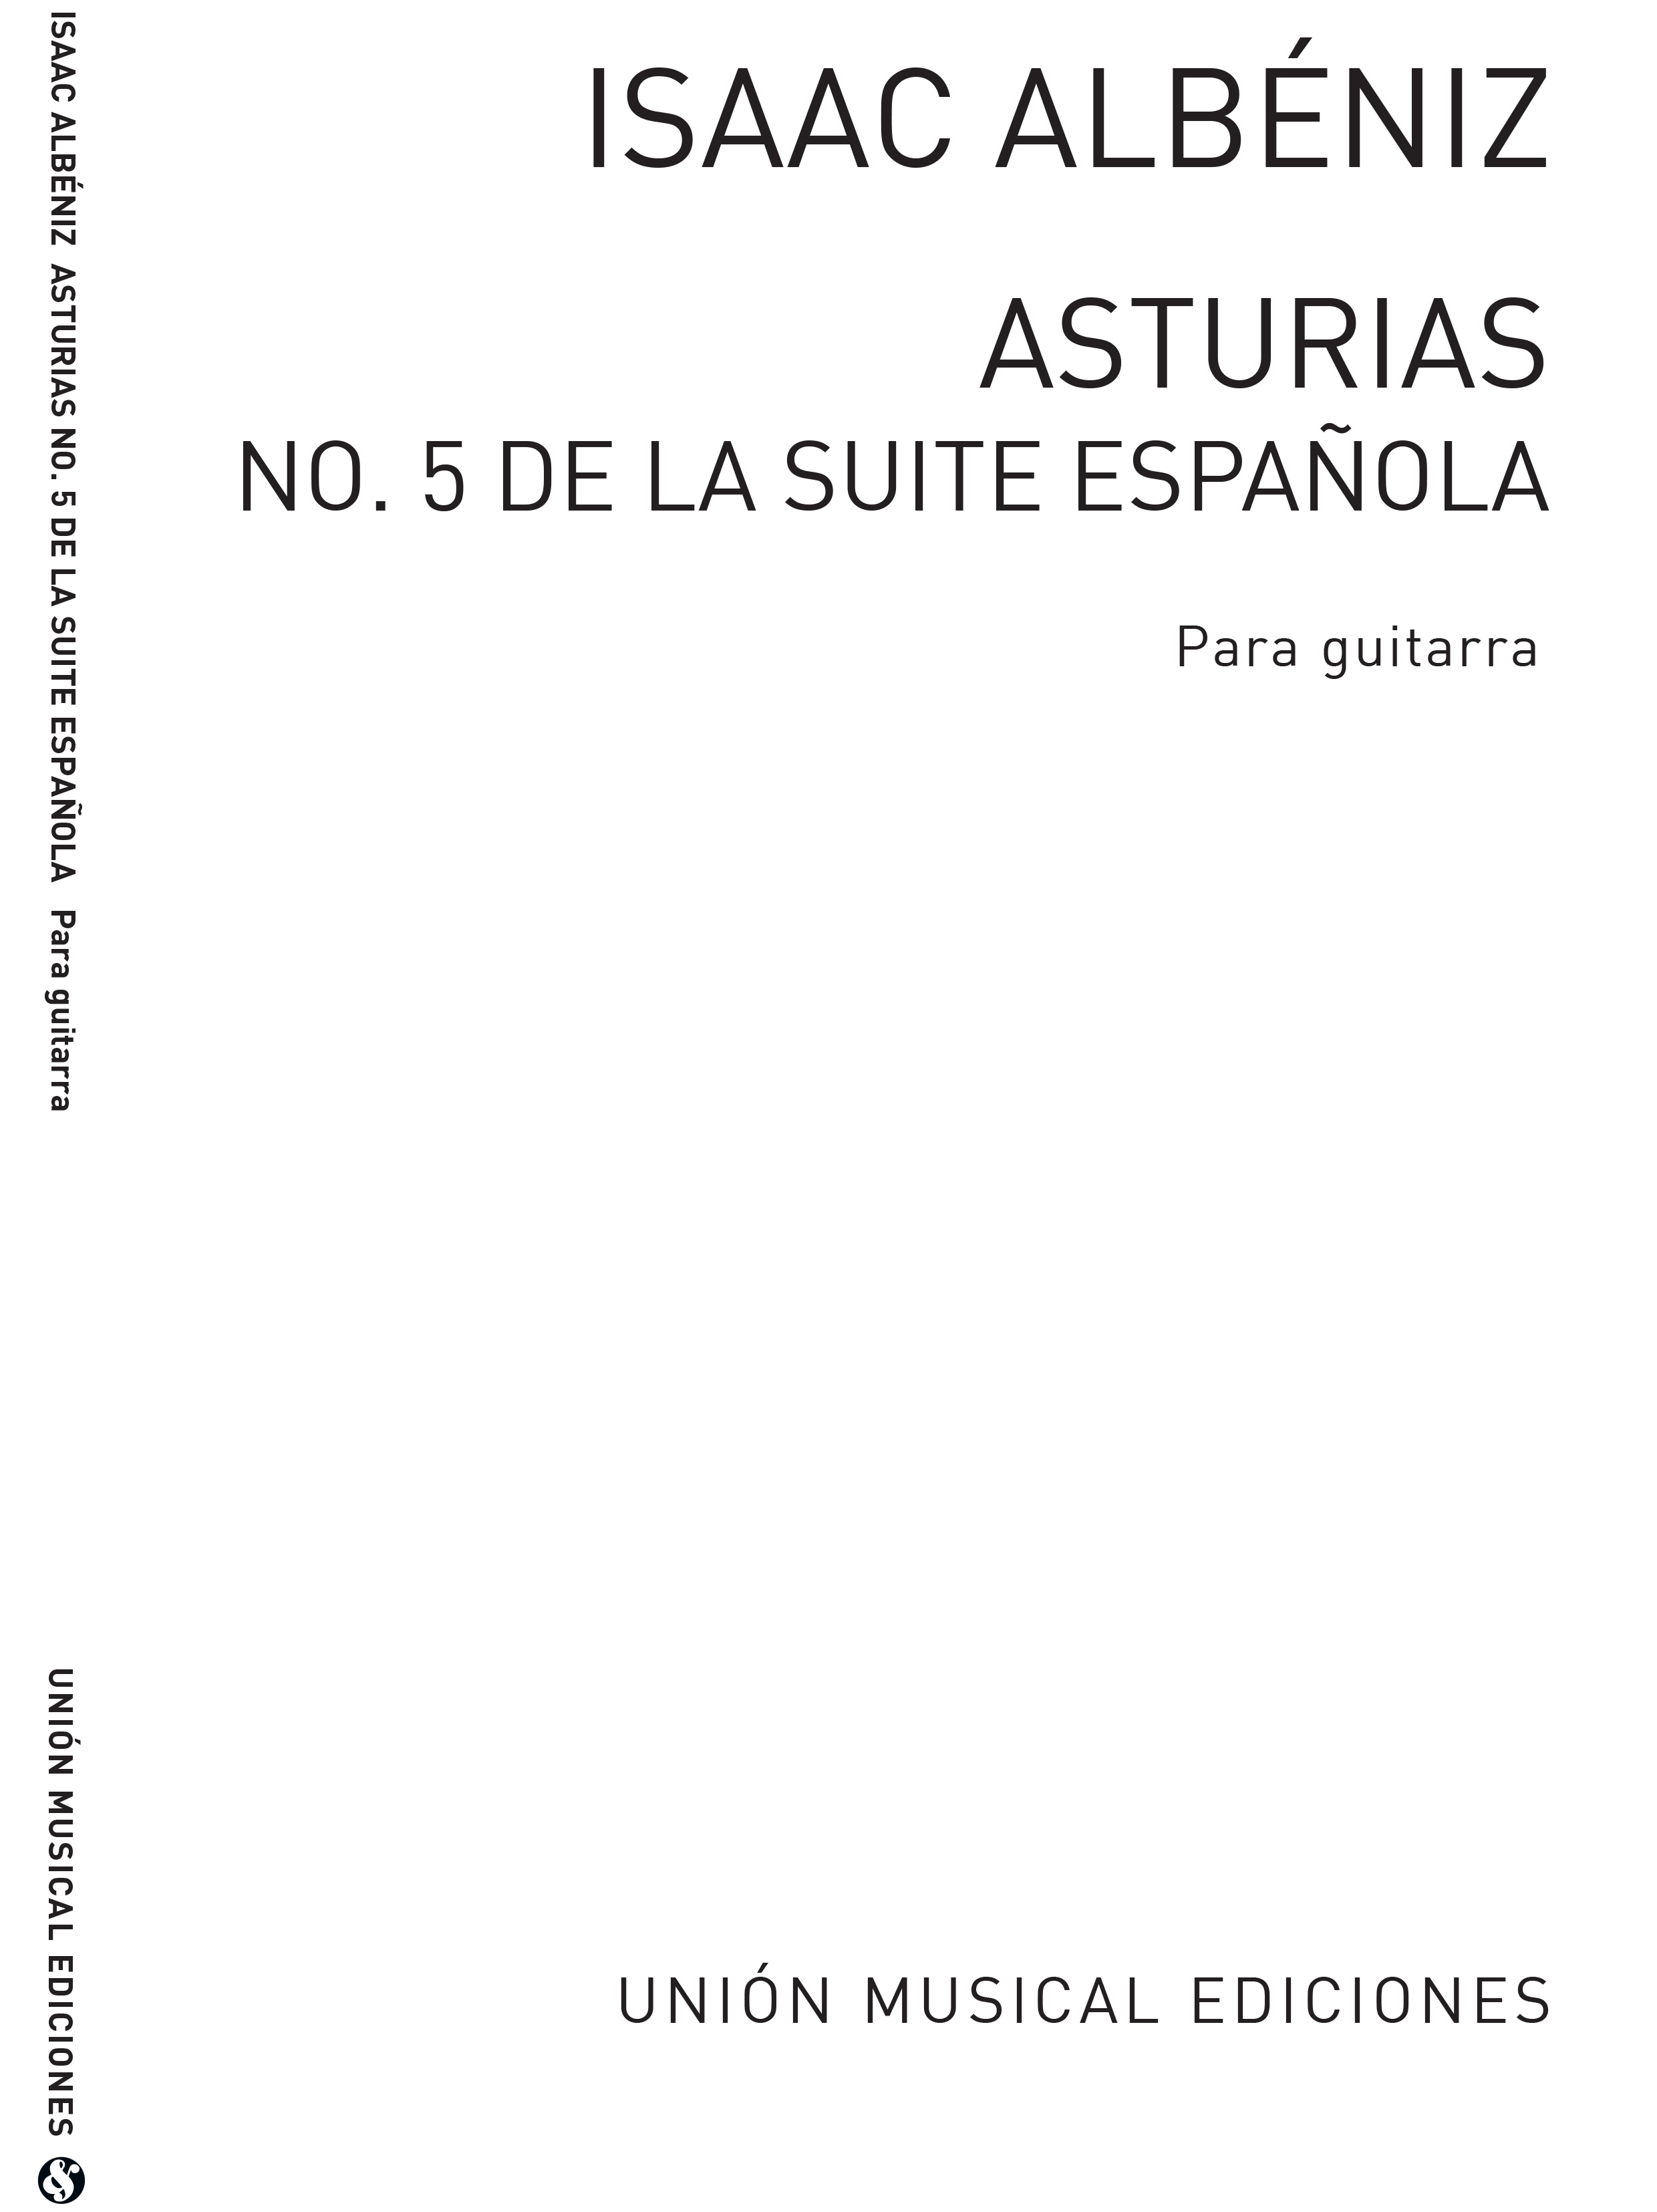 Isaac Albéniz: Asturias Leyanda No.5: Guitar: Instrumental Work